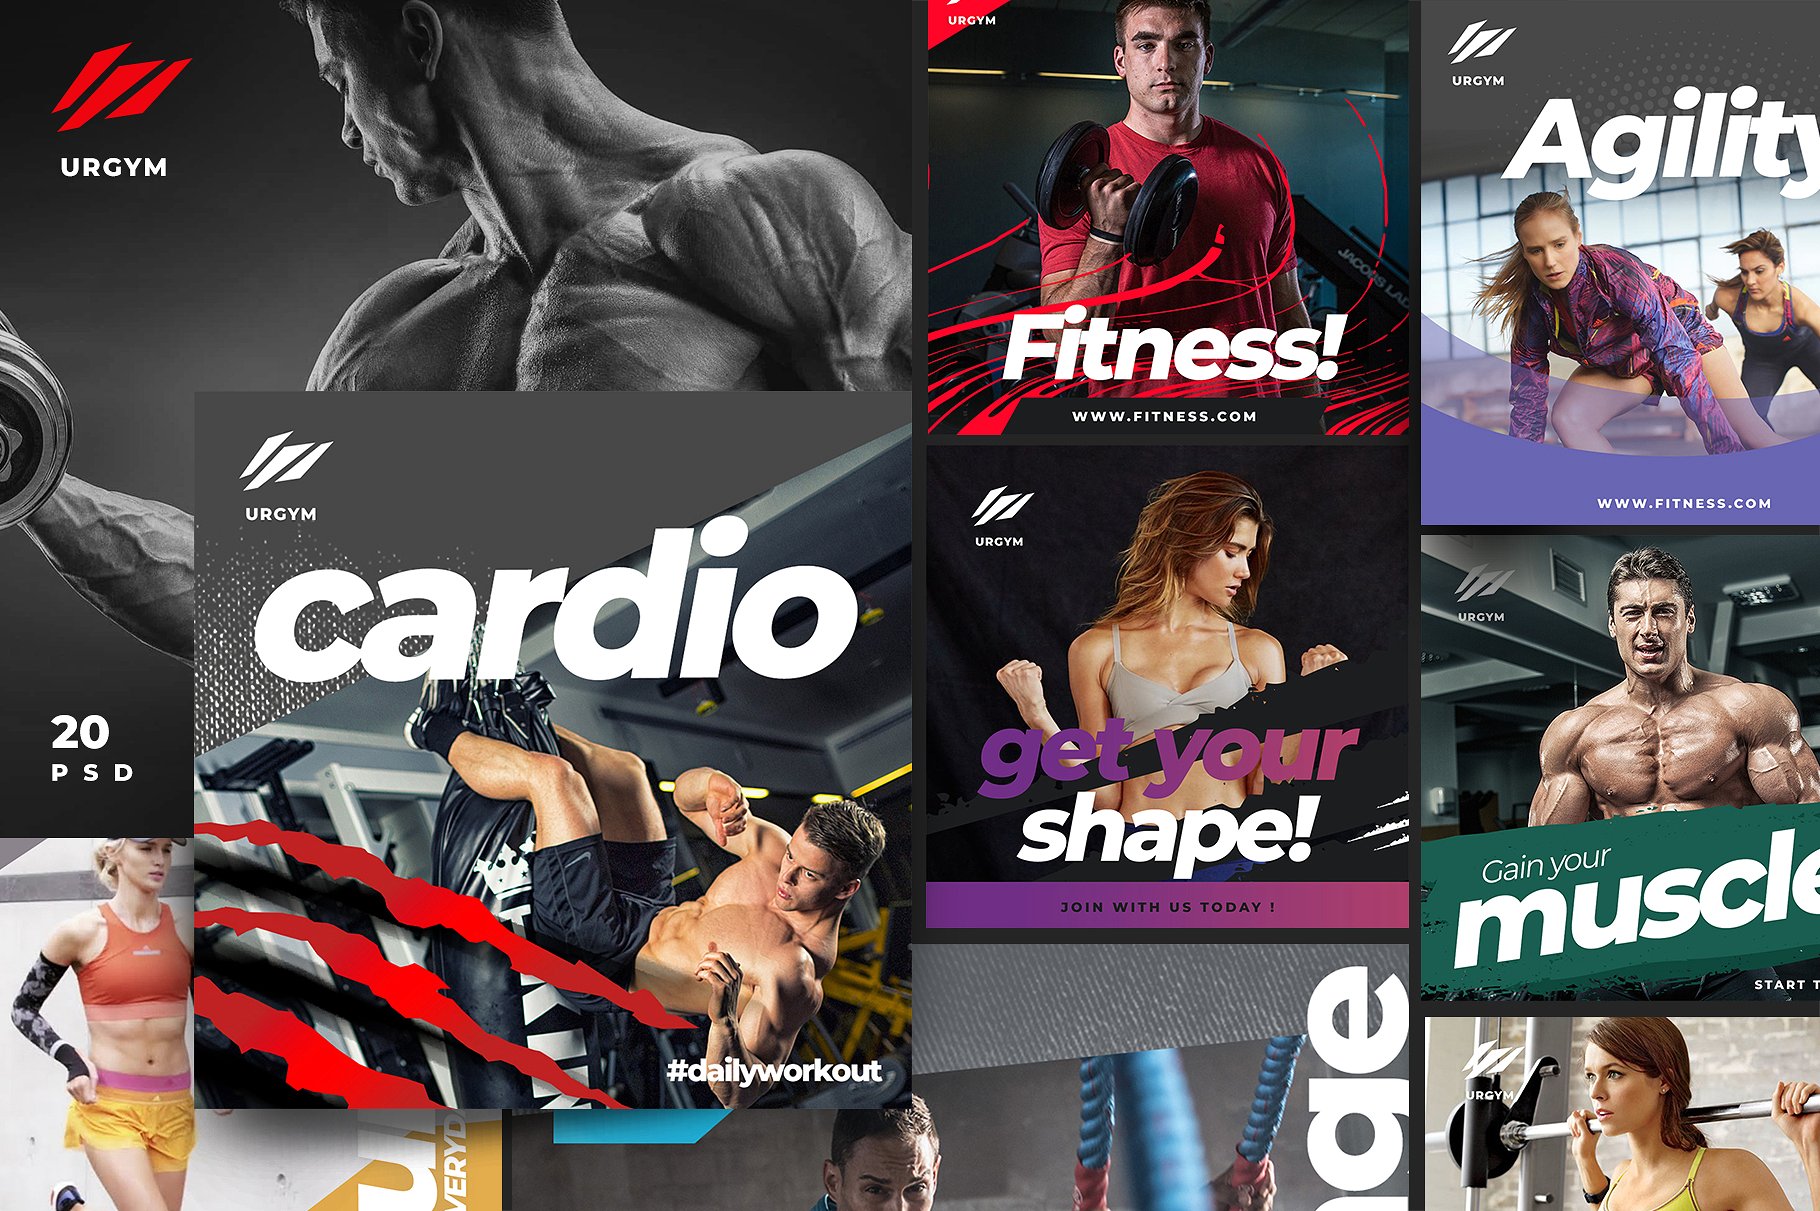 时尚健身&健身器材的instagram社交媒体模板第一素材精选 Fitness & Gym instagram pack 2.0 [psd]插图